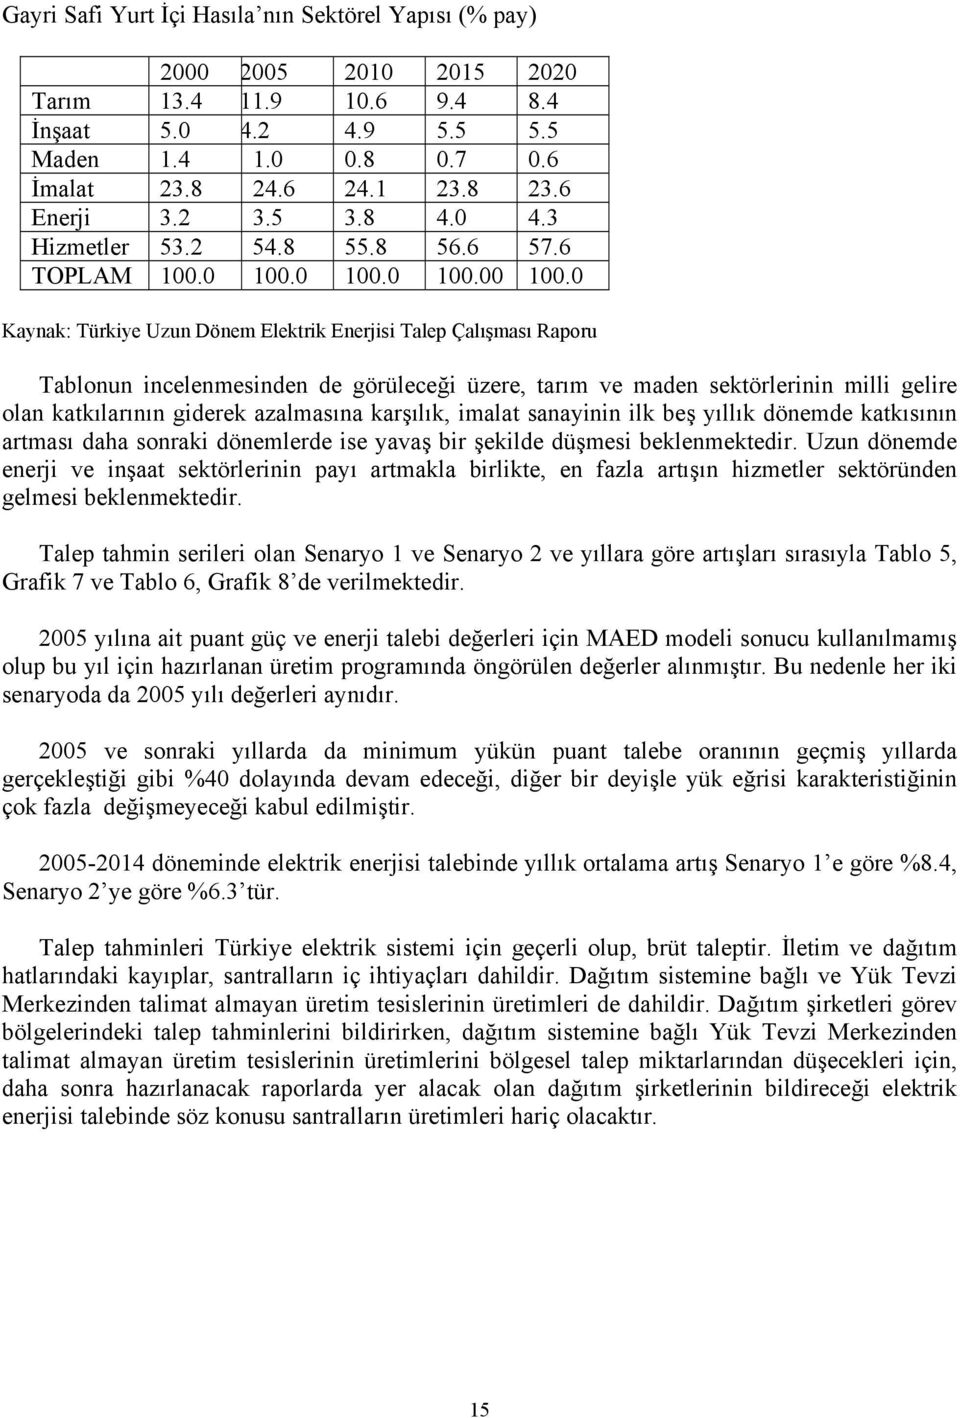 0 Kaynak: Türkiye Uzun Dönem Elektrik Enerjisi Talep Çalışması Raporu Tablonun incelenmesinden de görüleceği üzere, tarım ve maden sektörlerinin milli gelire olan katkılarının giderek azalmasına